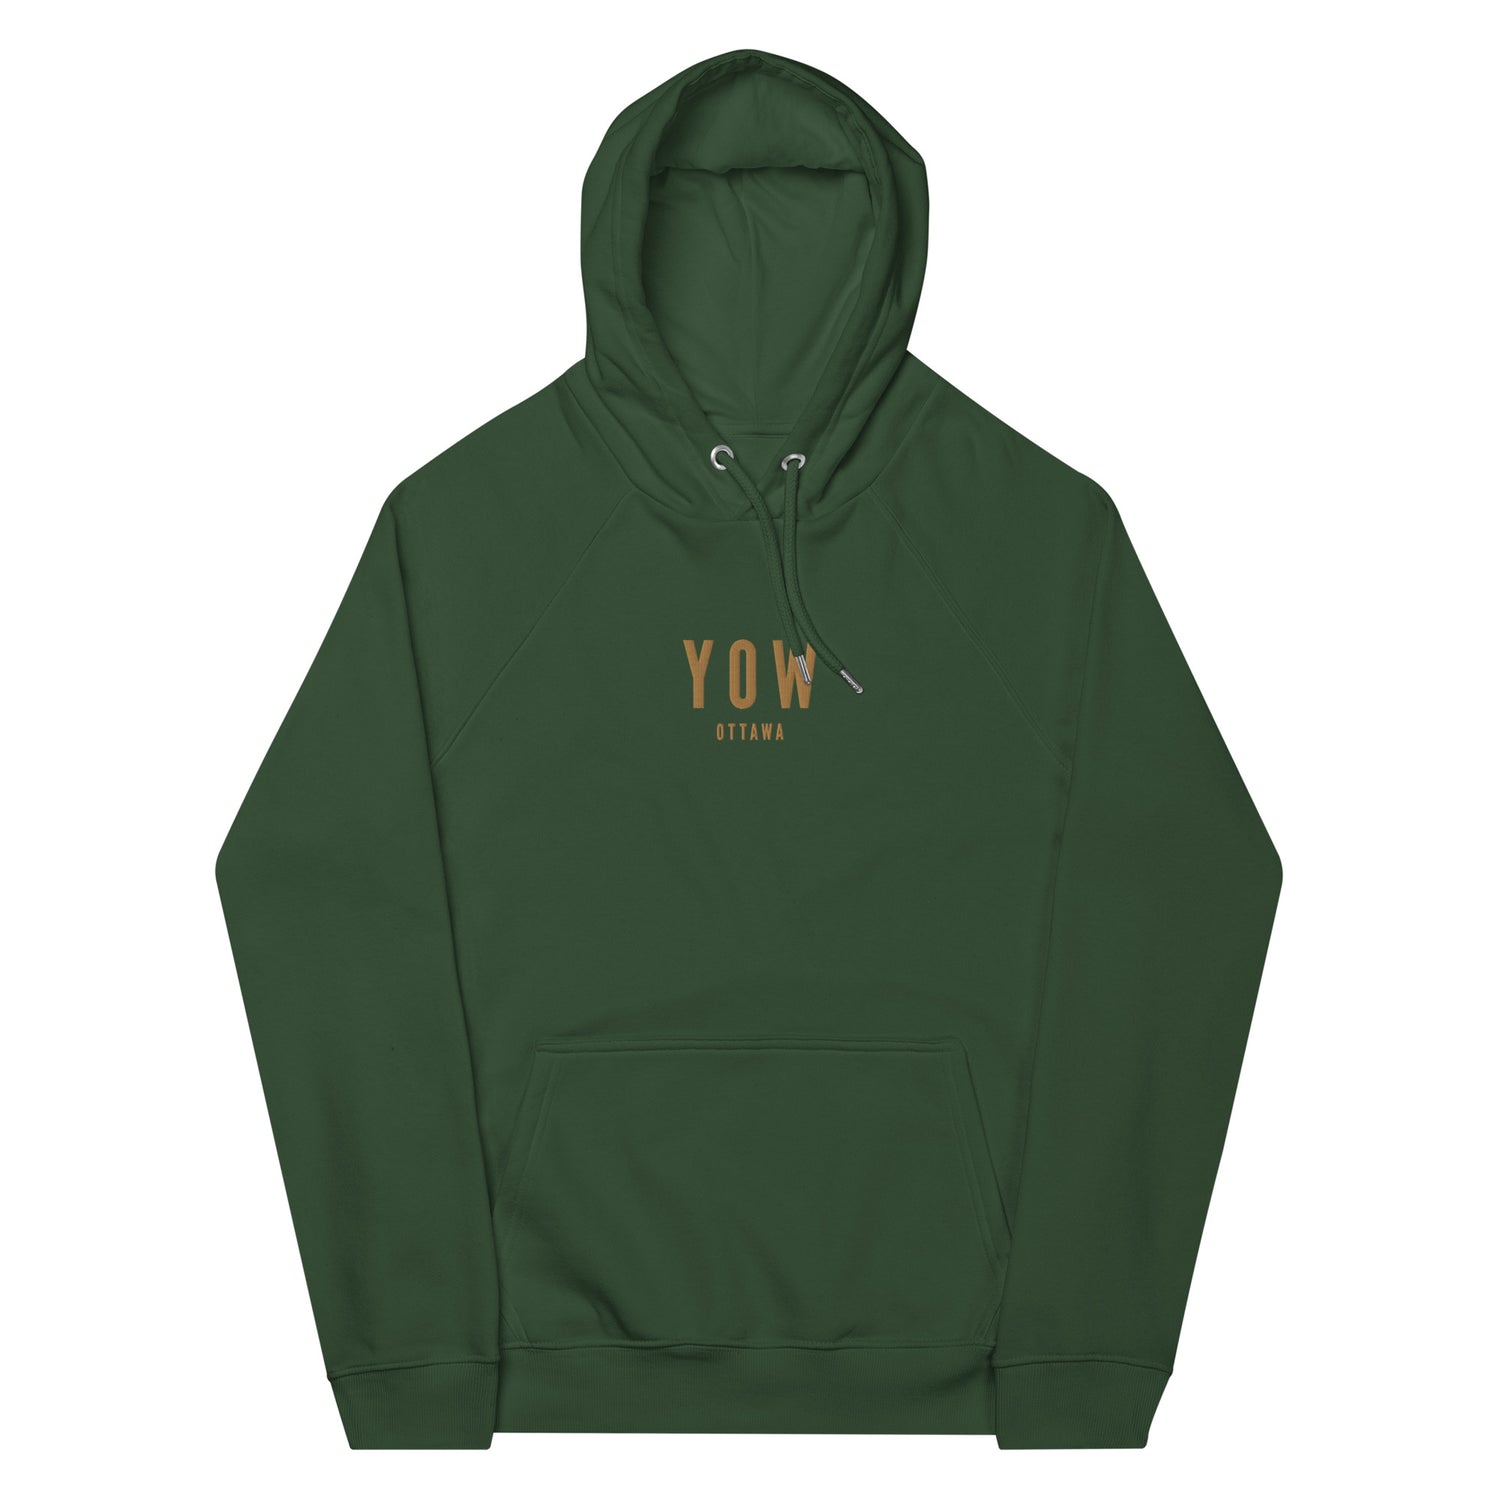 Ottawa Ontario Hoodies and Sweatshirts • YOW Airport Code